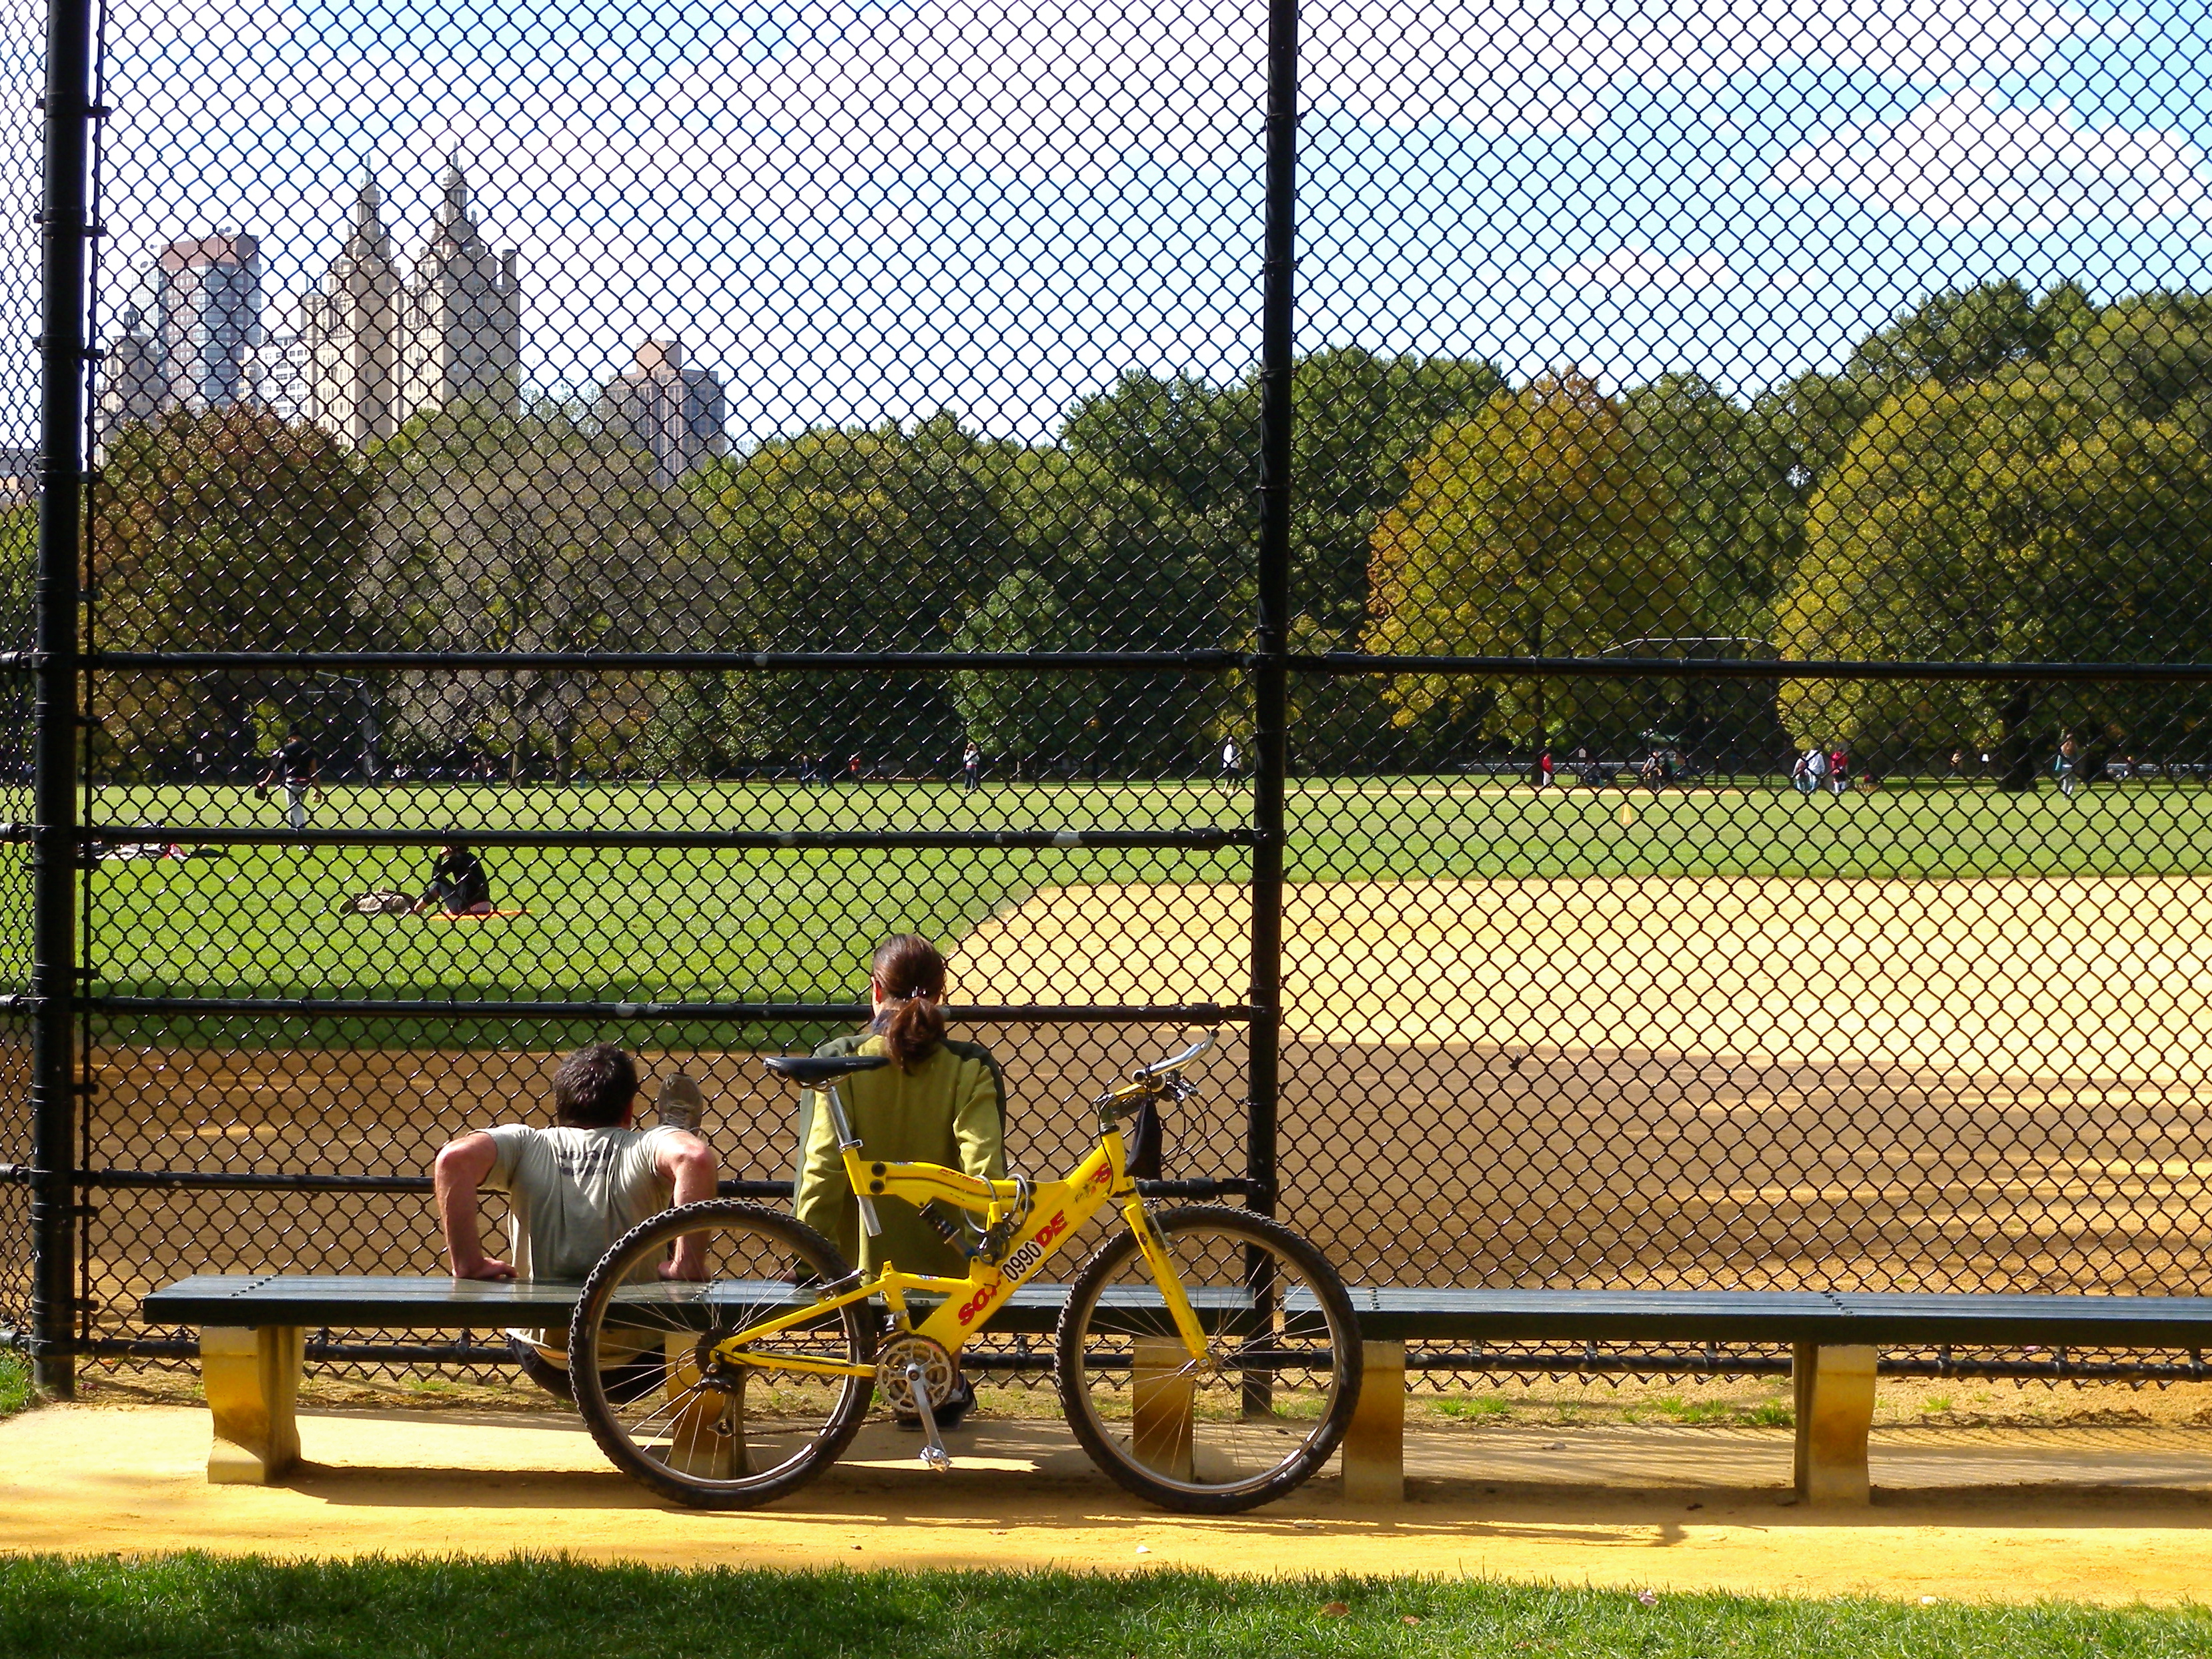 Central Park baseball field in October 2008